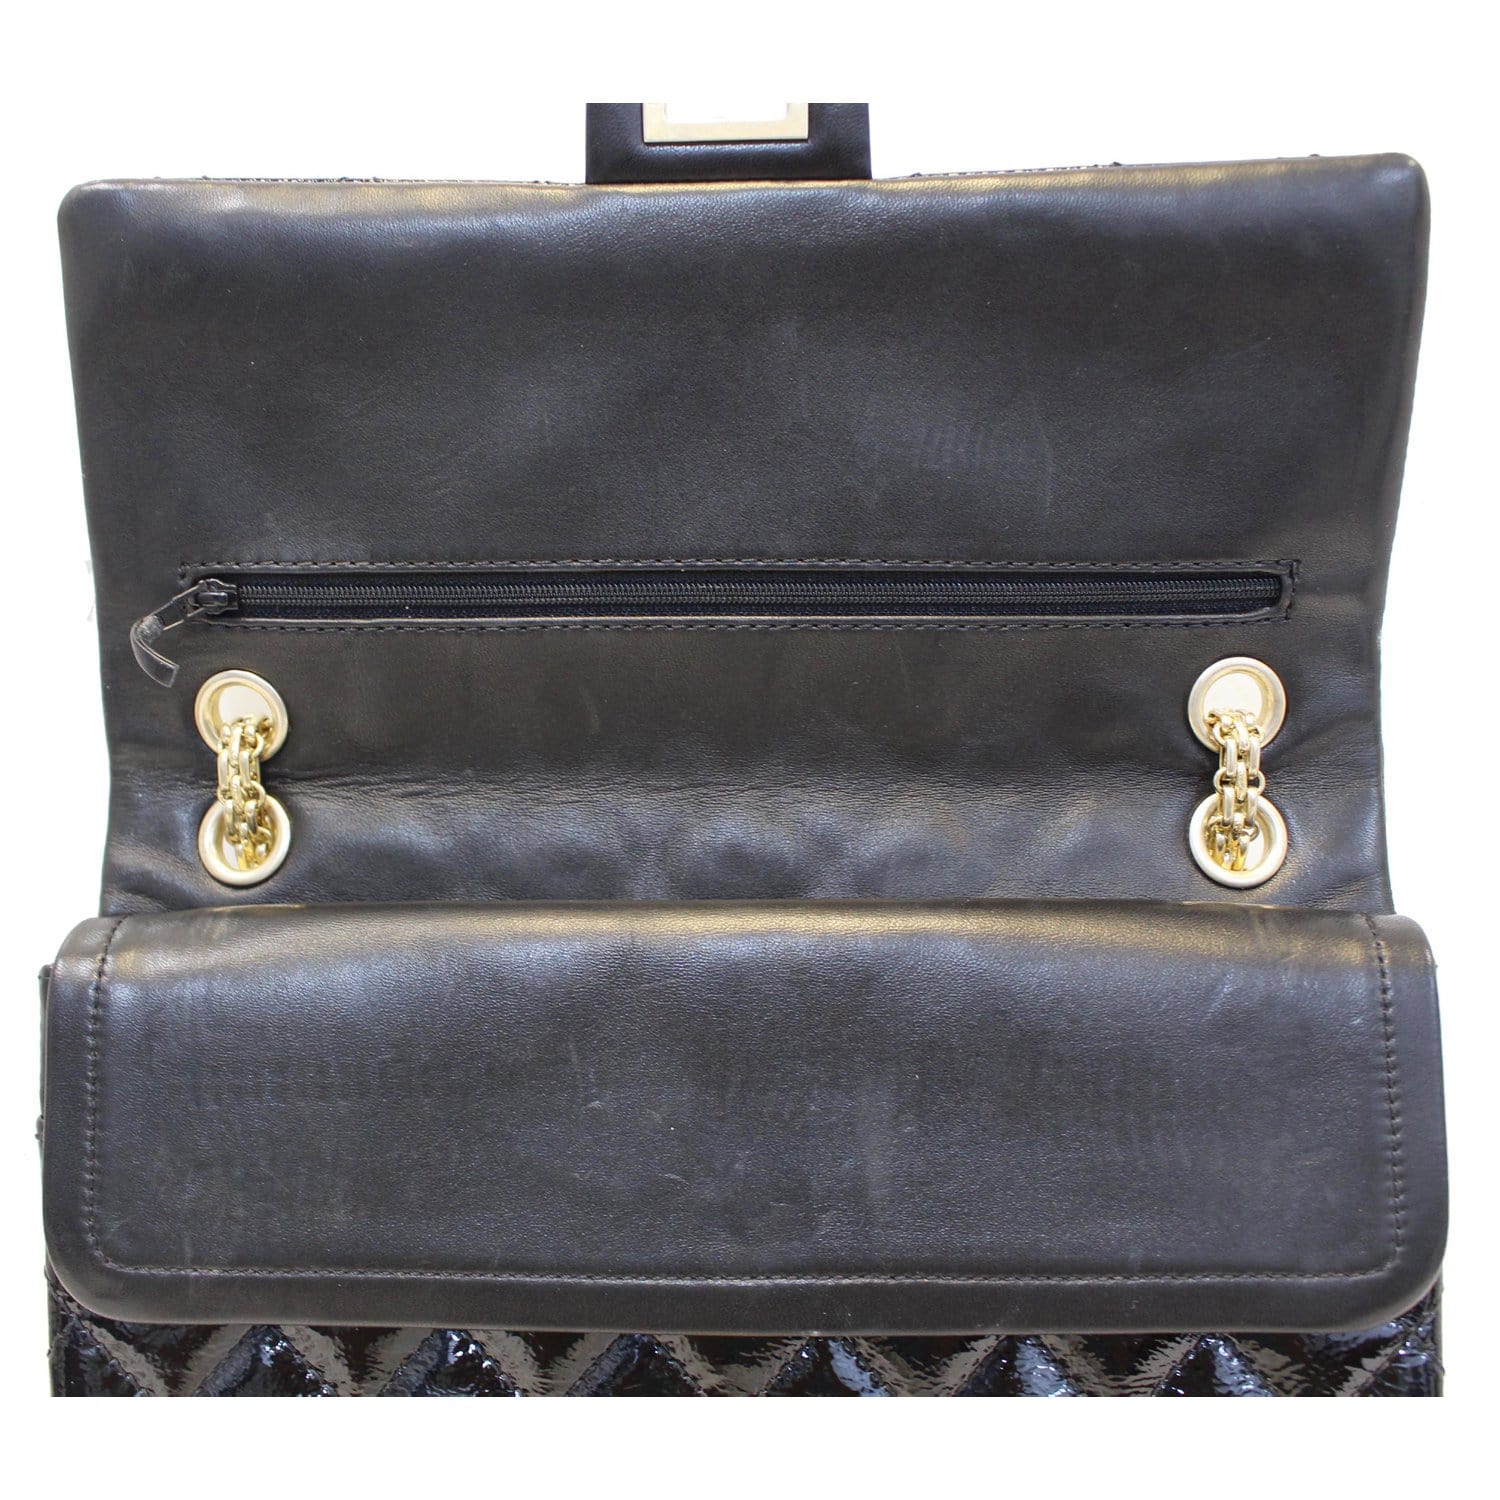 CHANEL Reissue Double Flap Patent Leather Shoulder Bag Black-US